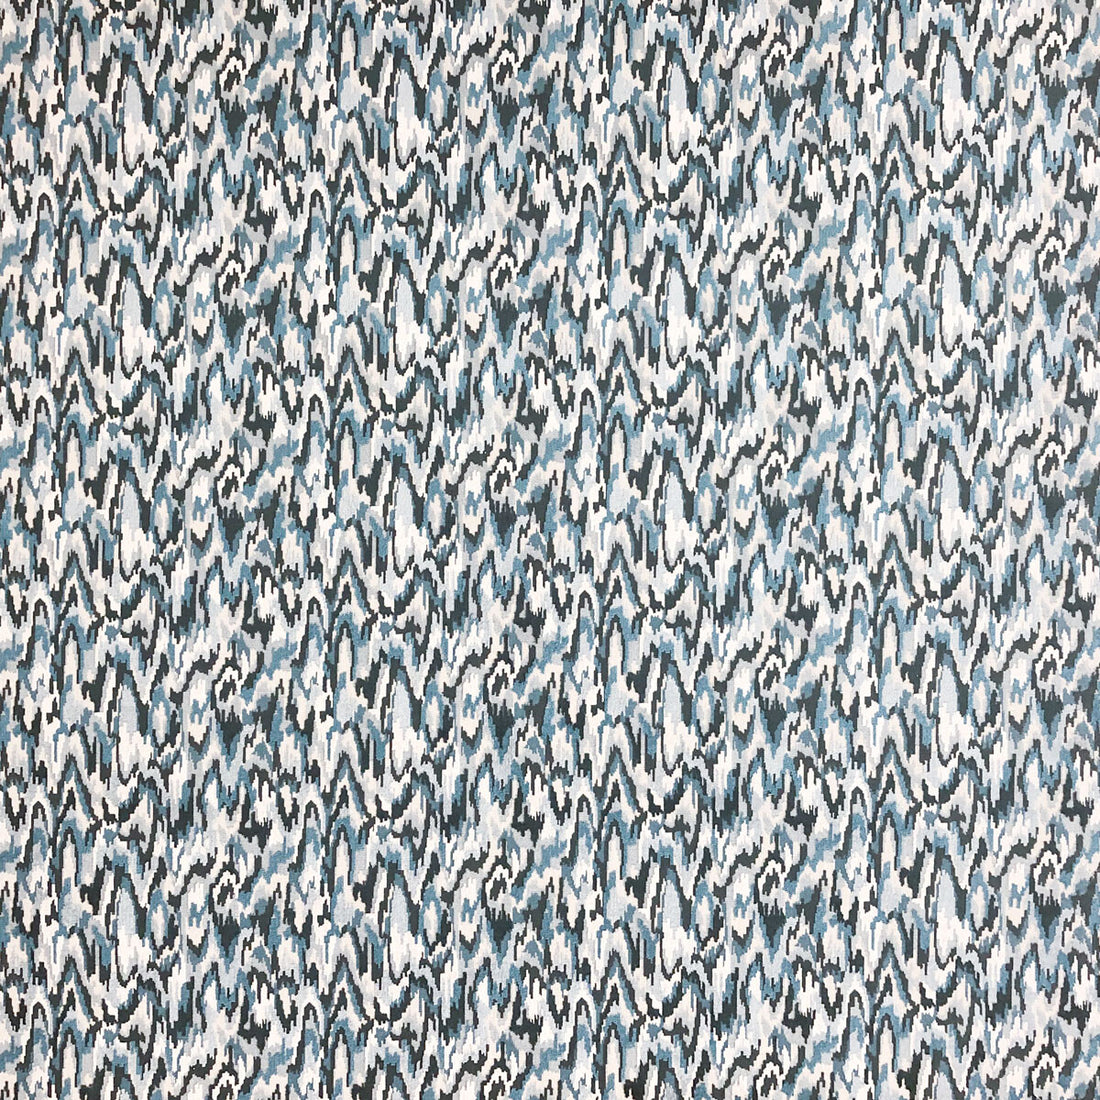 Teodora fabric in azul color - pattern LCT1064.003.0 - by Gaston y Daniela in the Lorenzo Castillo VI collection